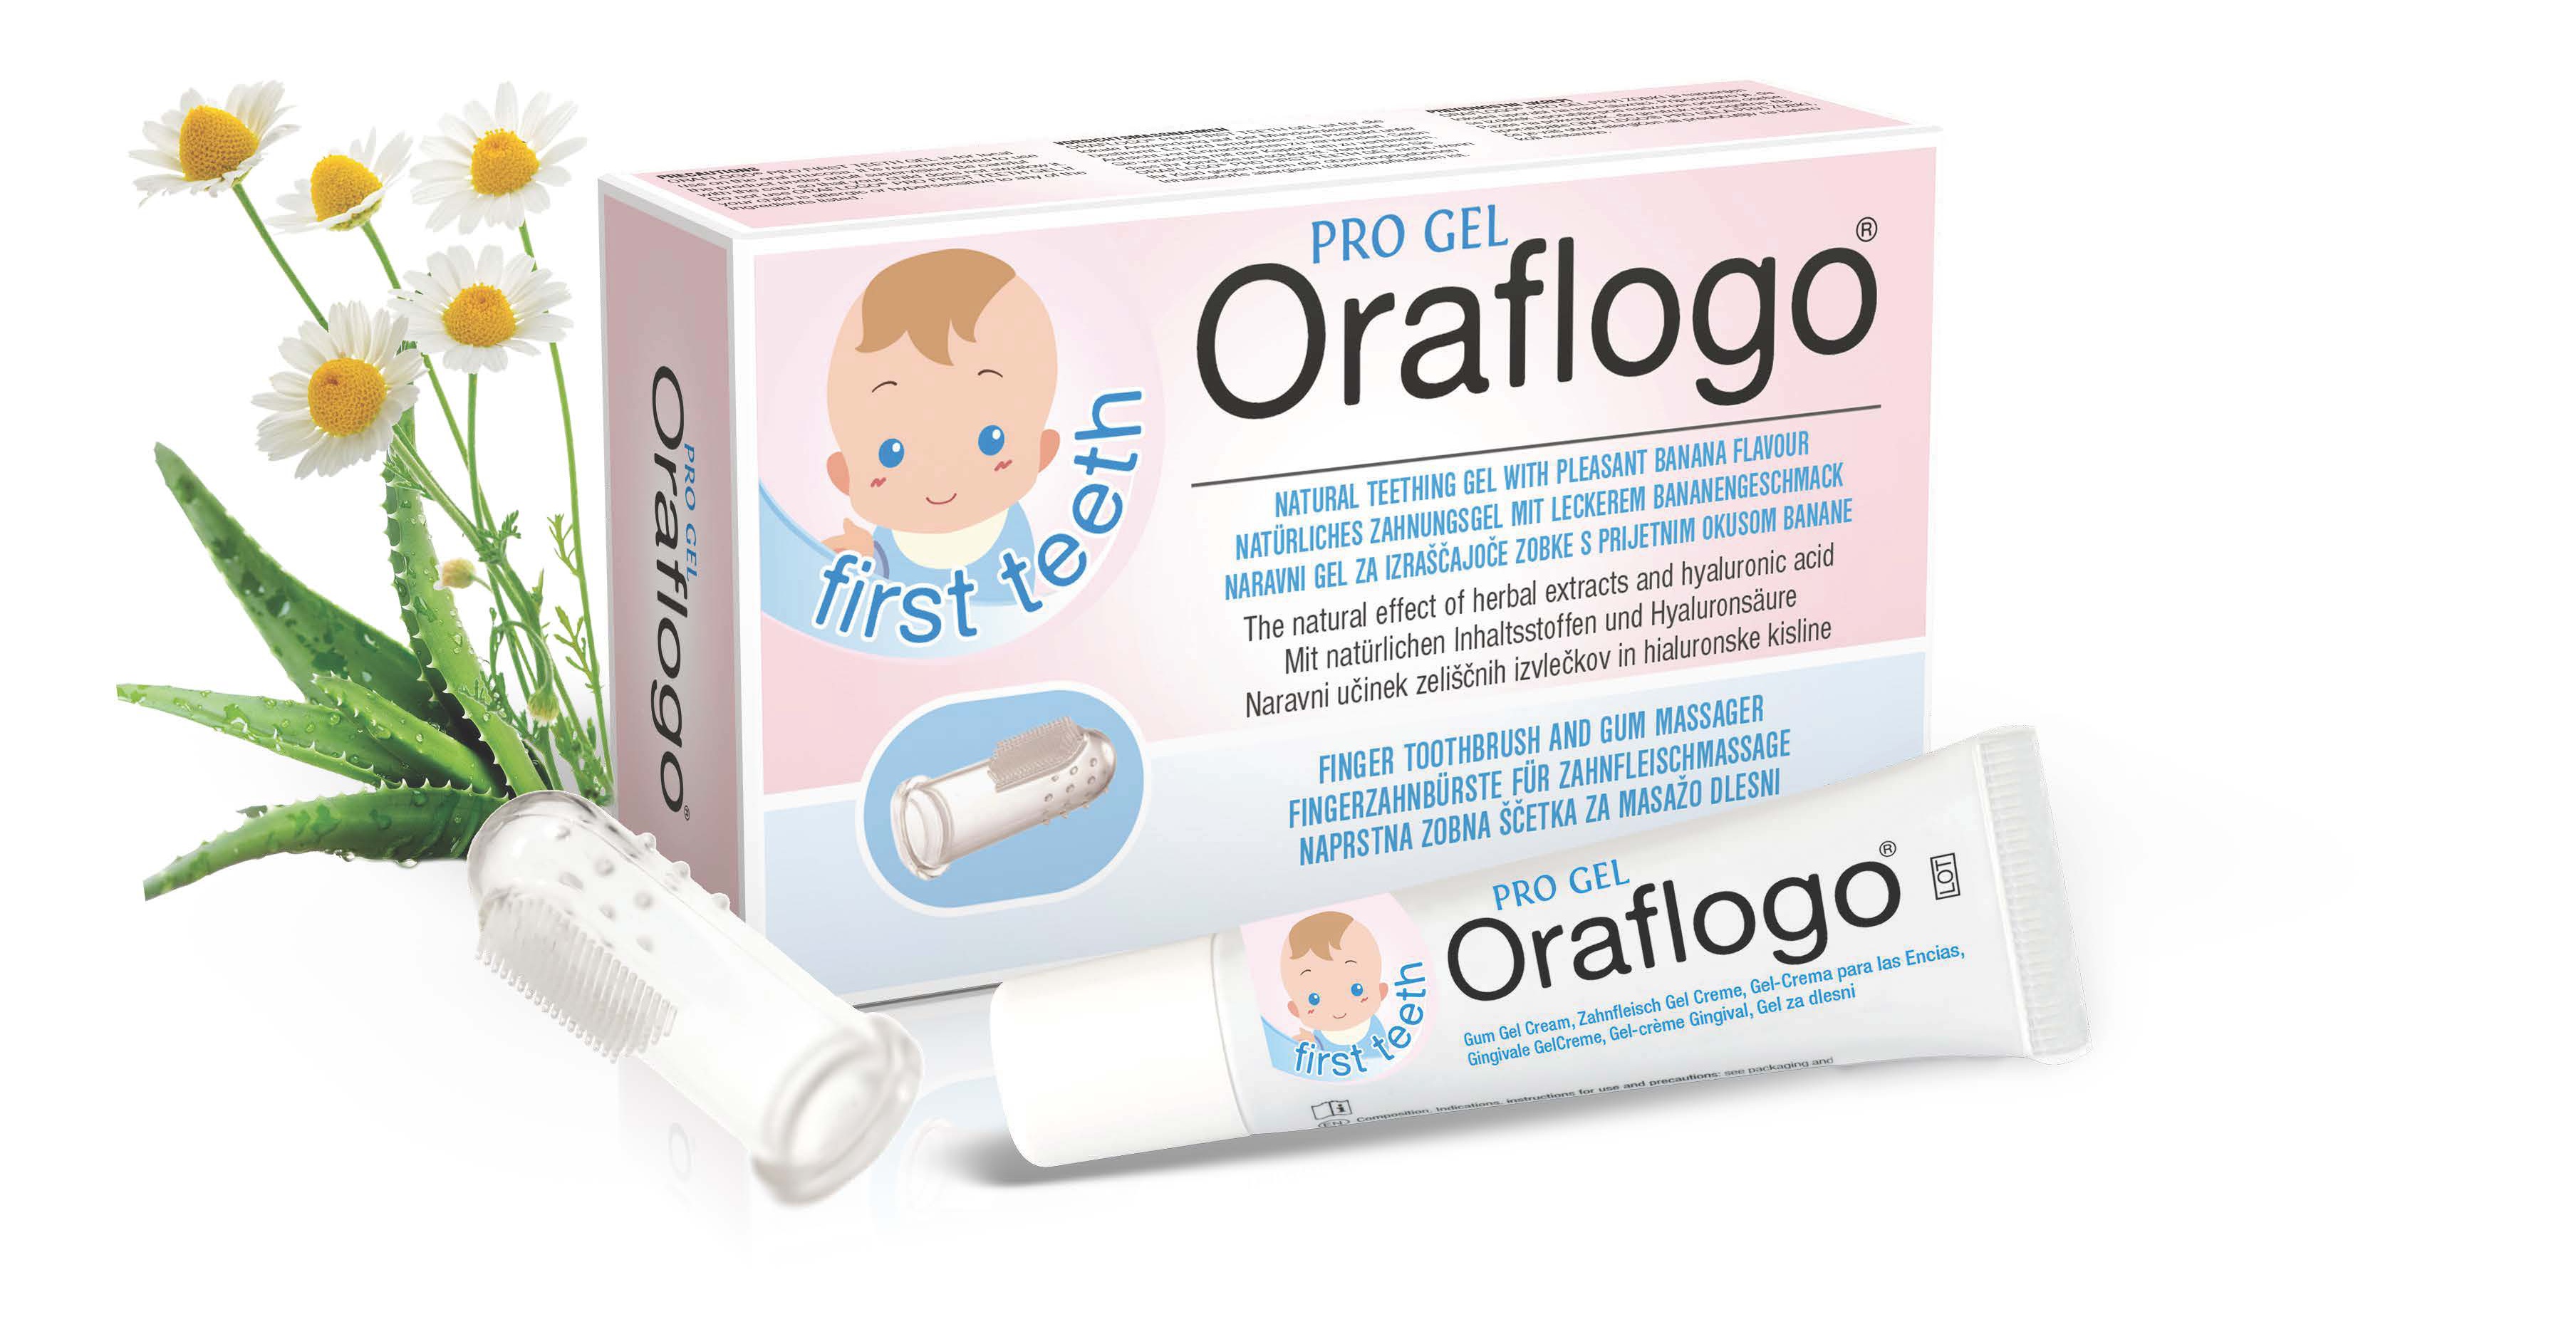 Oraflogo First Teeth Pro Gel